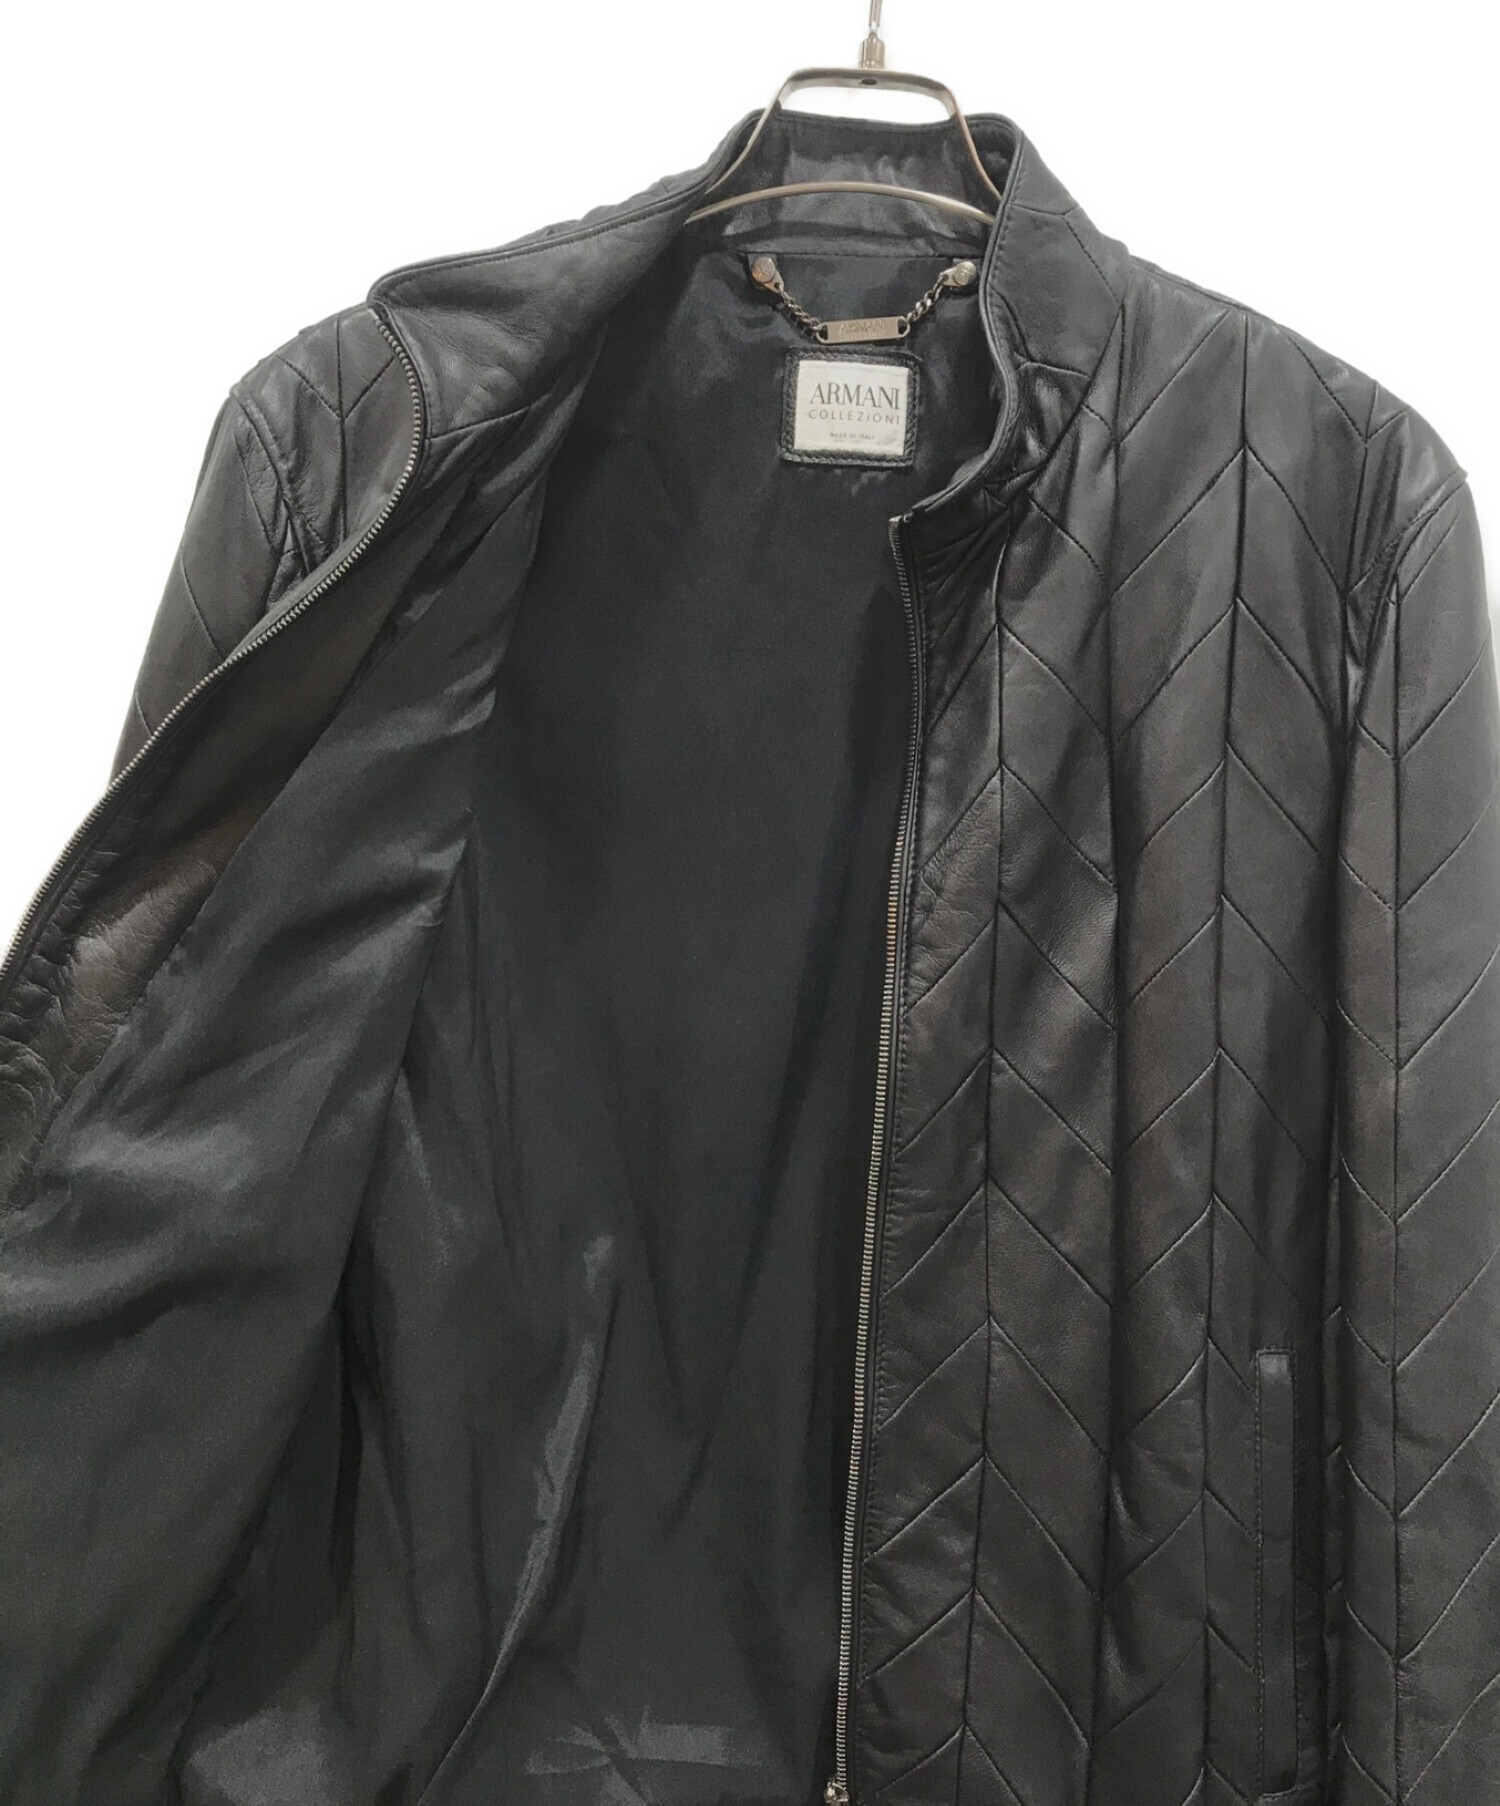 ARMANI COLLEZIONI (アルマーニ コレツィオーニ) ラムレザージャケット ブラック サイズ:50